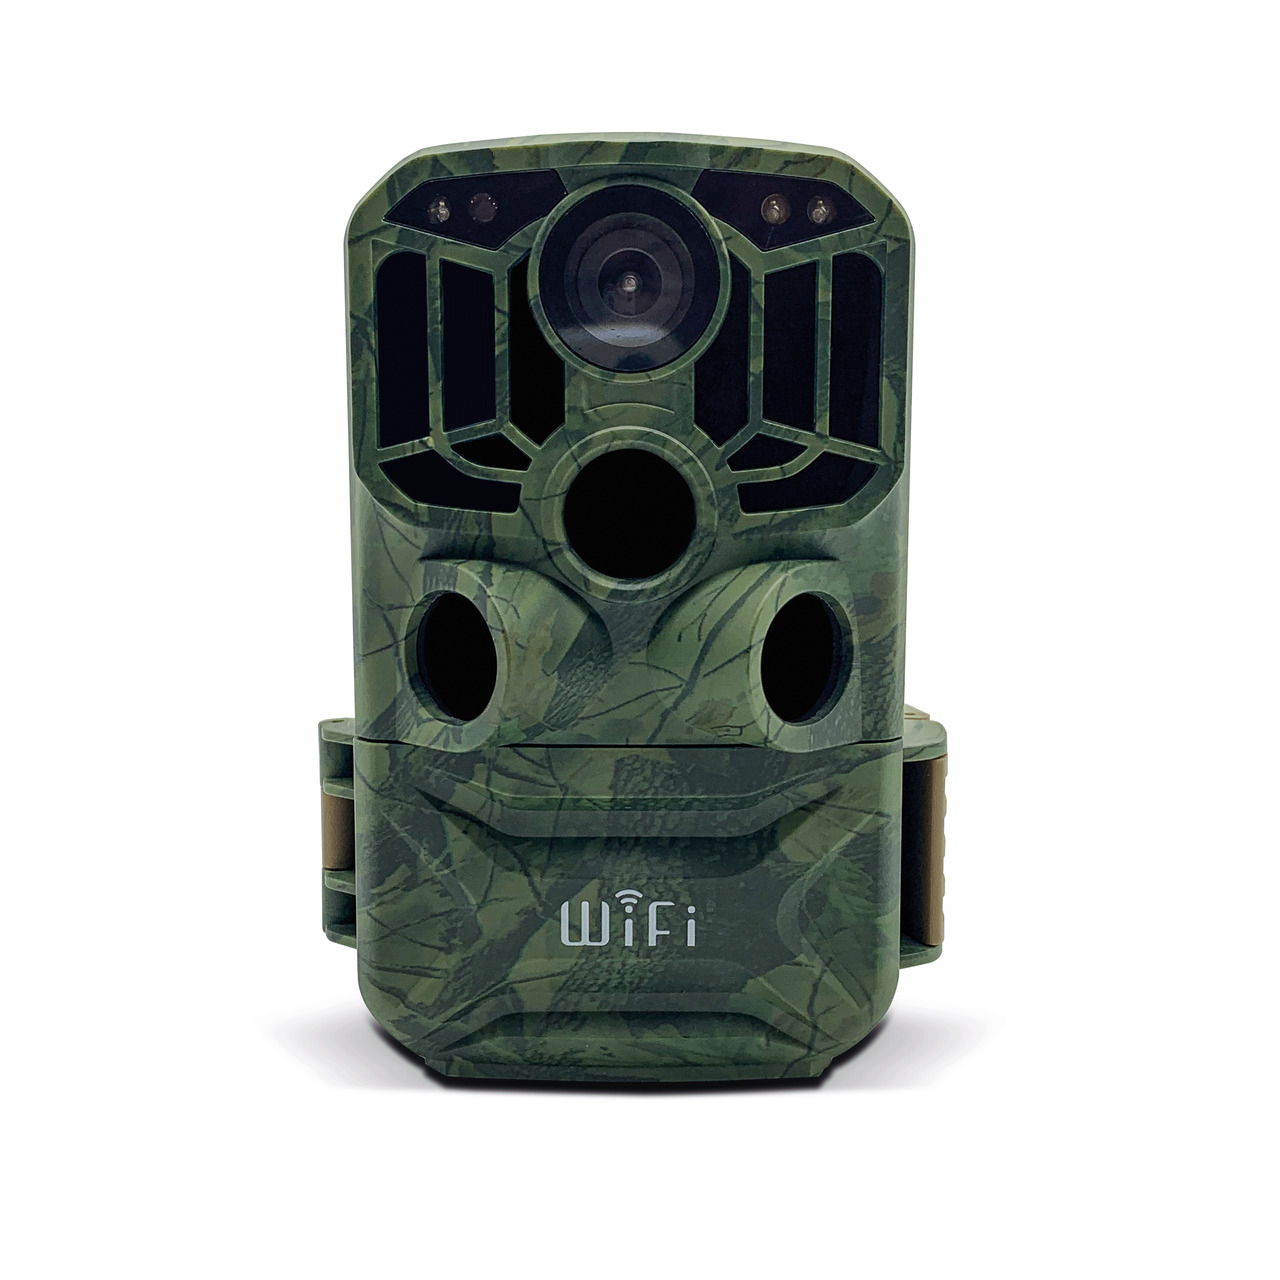 Braun Fotofalle - Wildkamera Scouting Cam BLACK800 WiFi- Auslsezeit 0-6 s- IP66